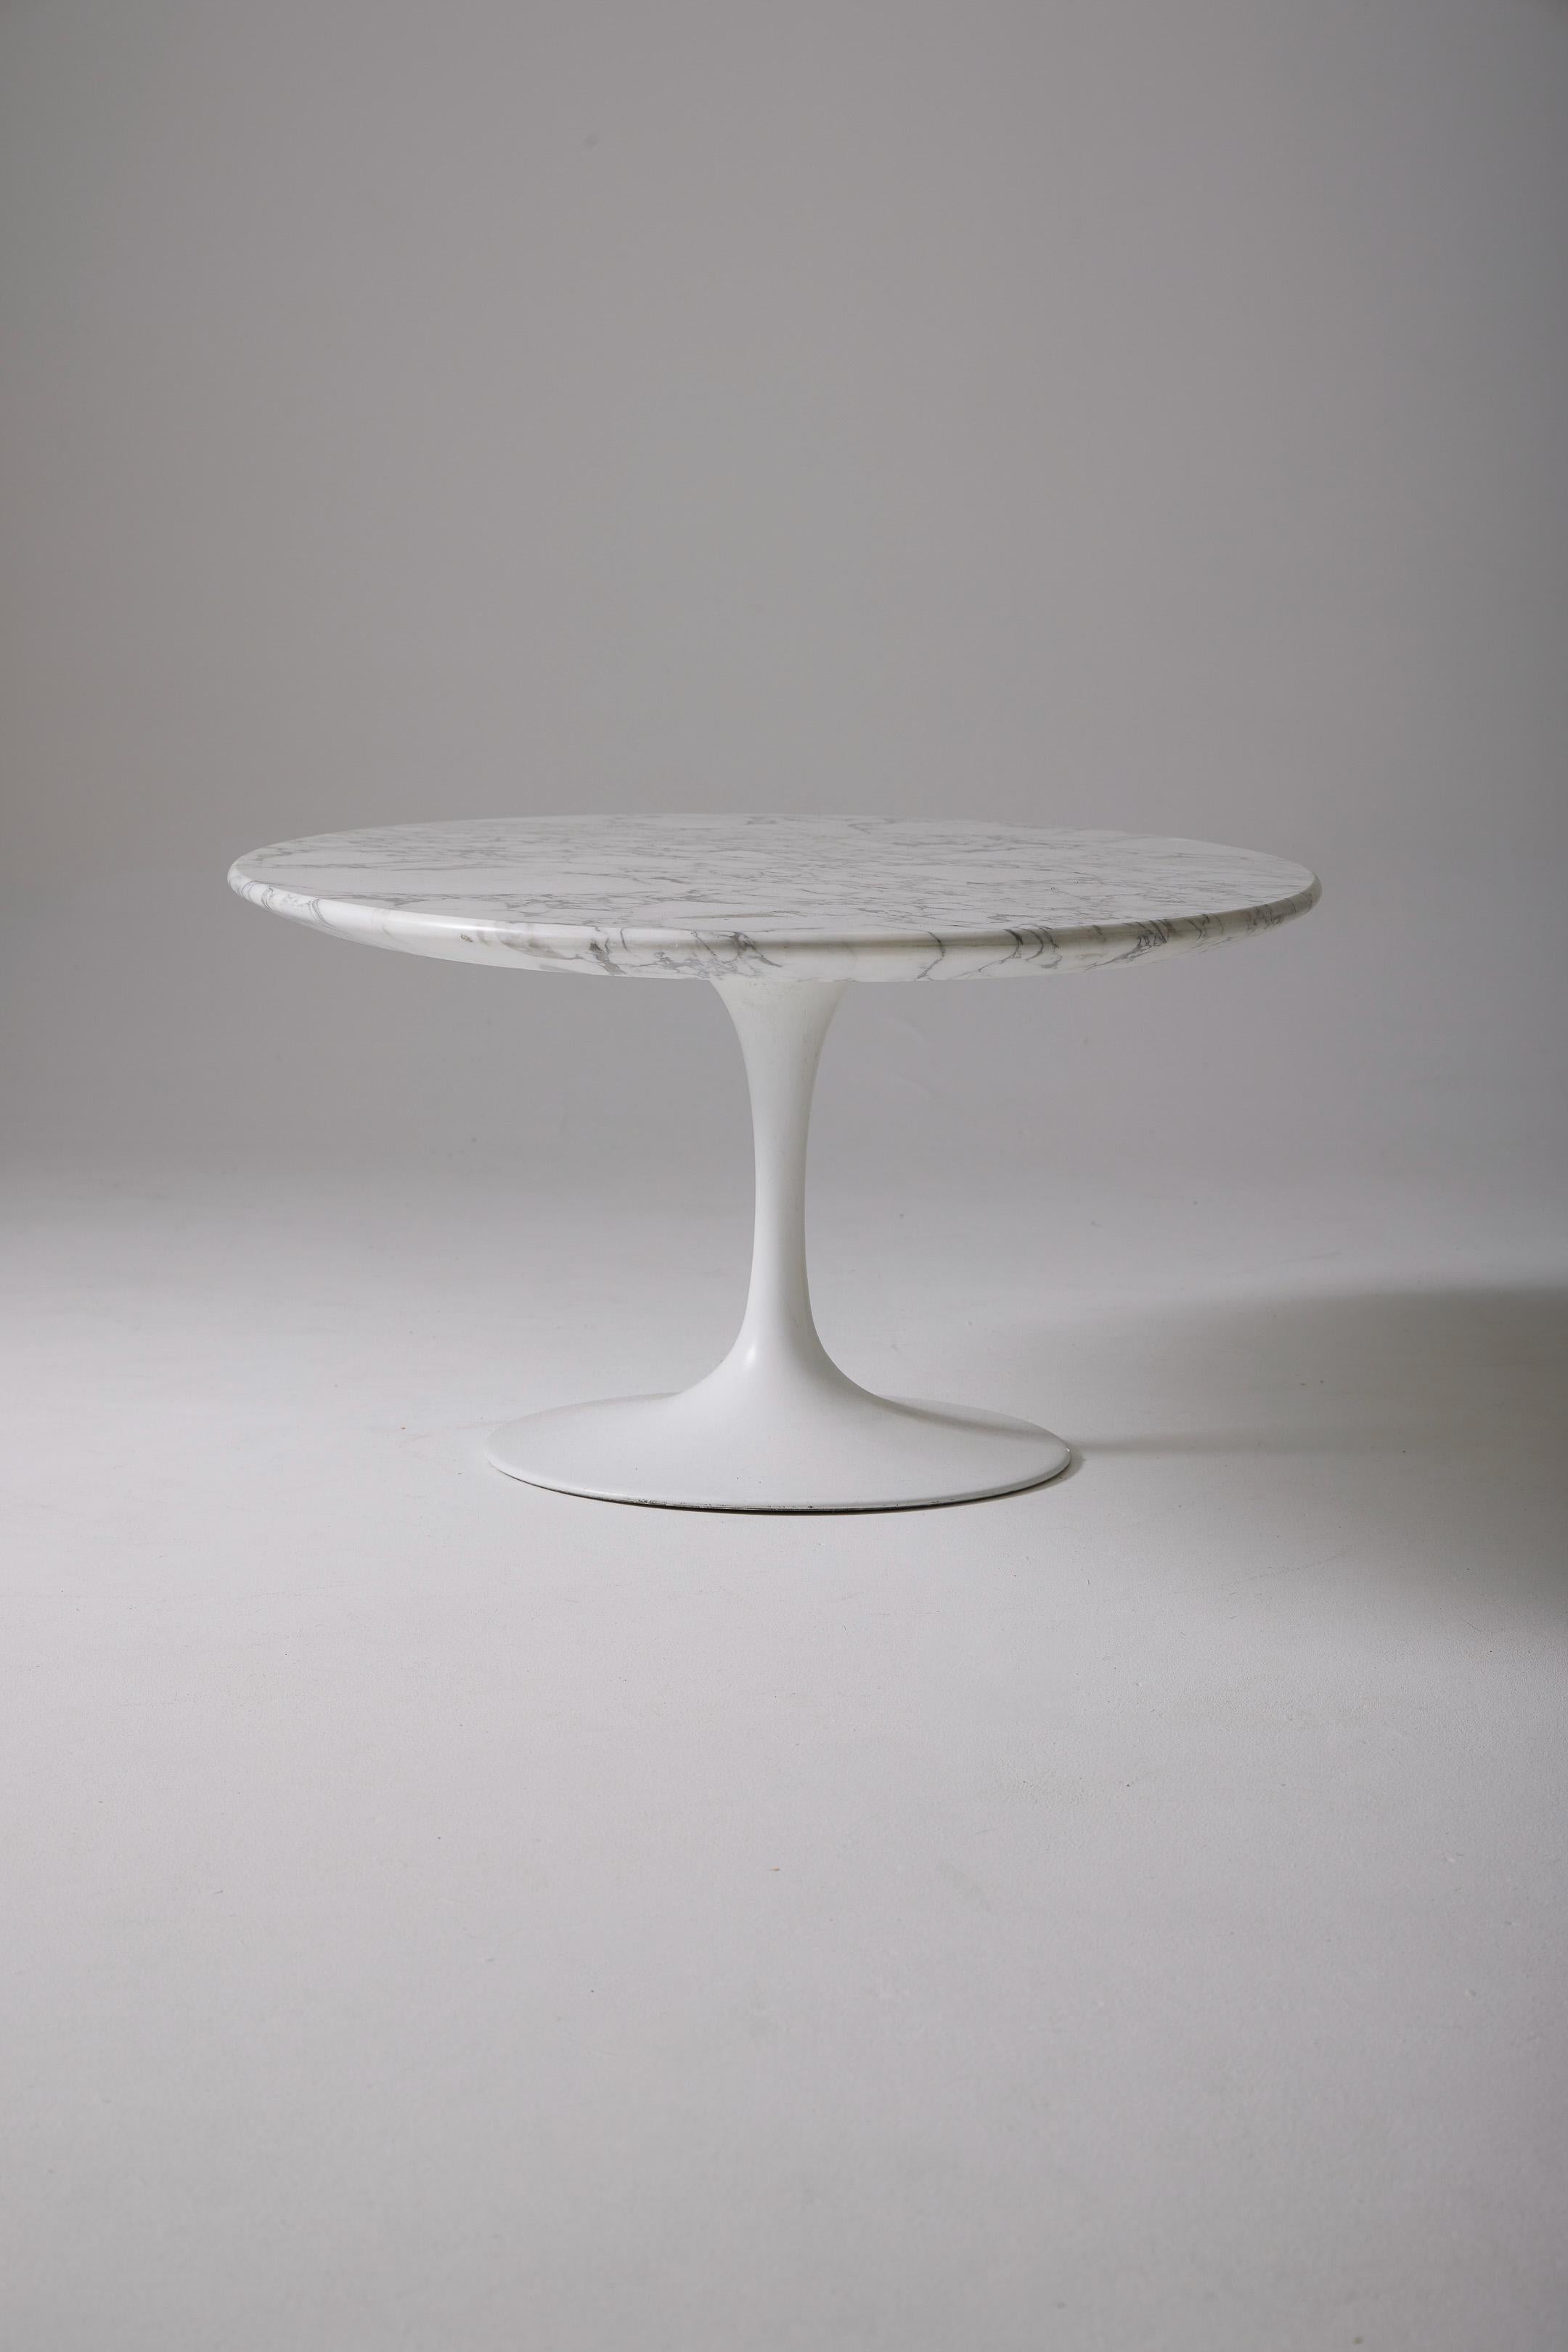 Couchtisch aus der Parallel Bar Kollektion der Designerin Florence Knoll für Knoll International, 1950er Jahre. Die runde Tischplatte aus Nussbaumholz ruht auf 4 gebürsteten Metallbeinen. Sehr guter Zustand.
DV440